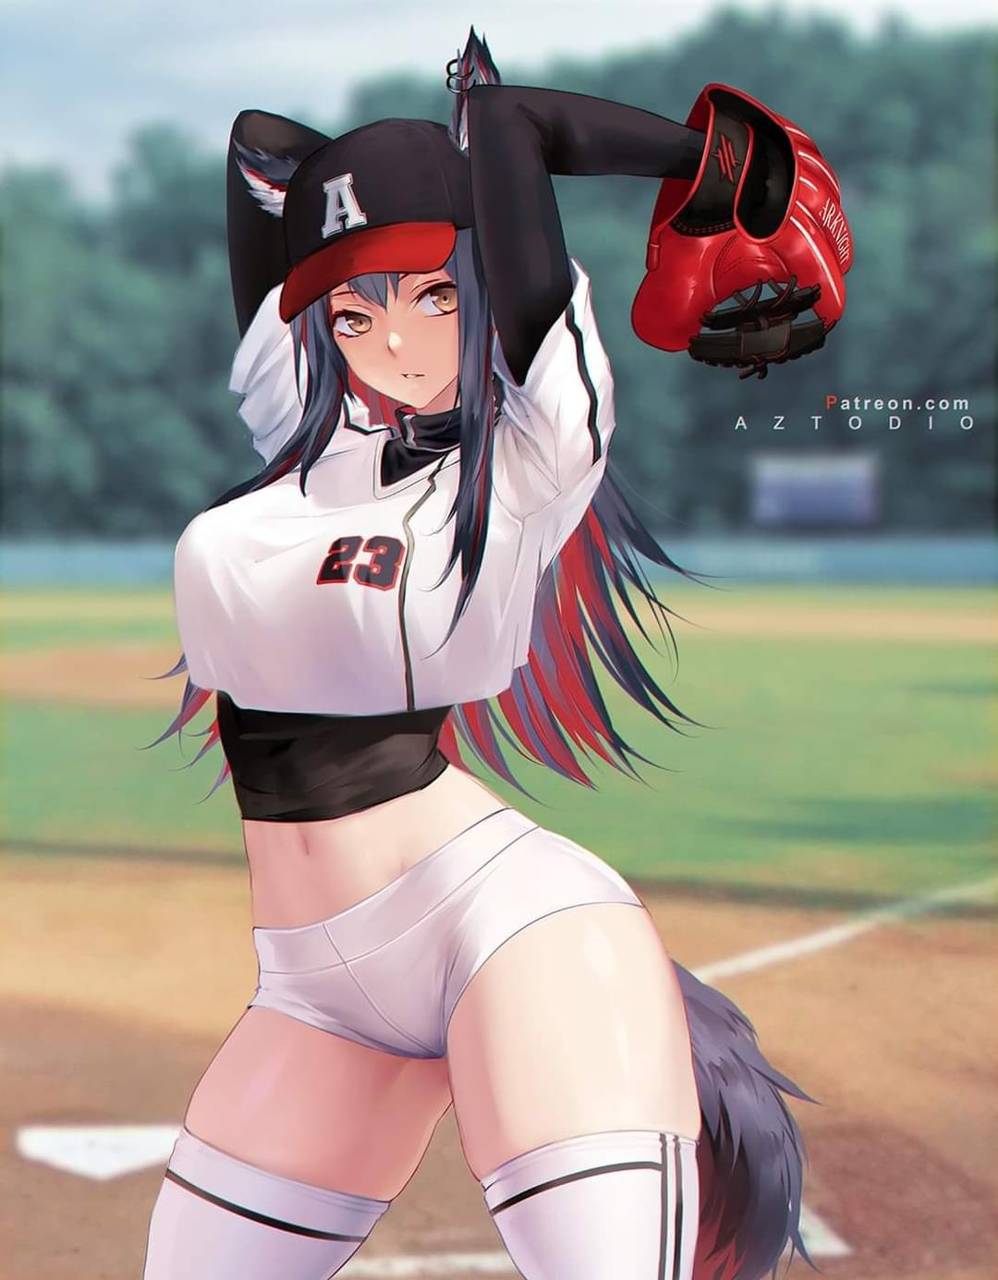 Baseball anime girl wallpaper